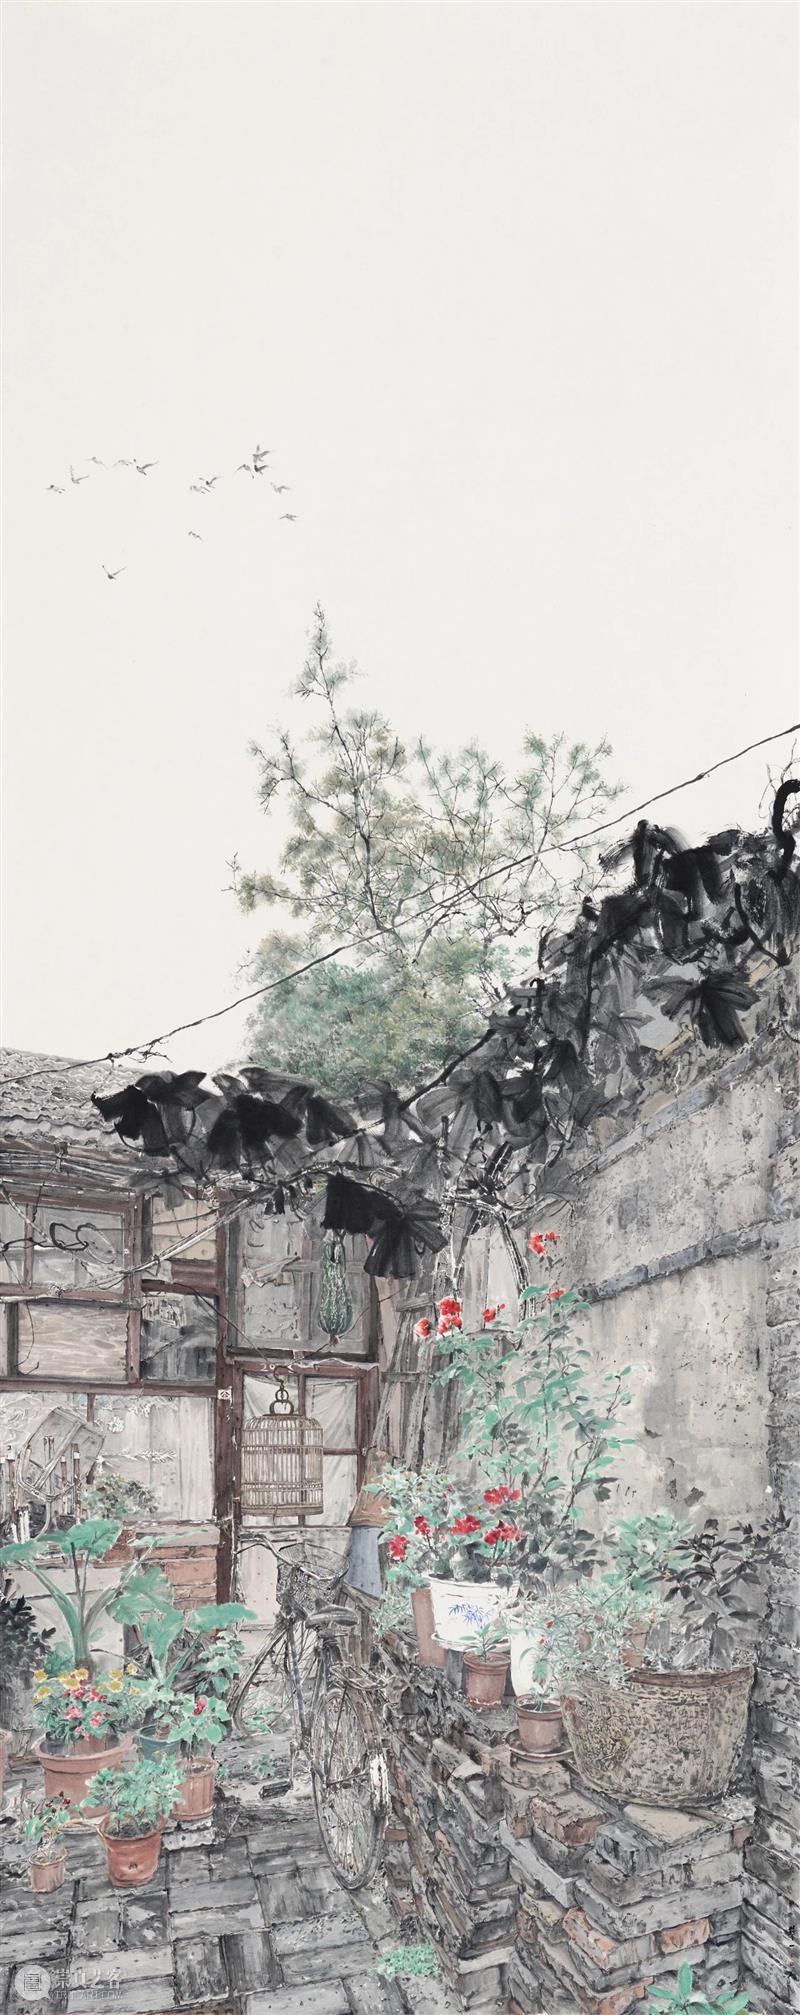 展览预告 | “点画——北京画院画家作品展”将于11月10日在北京画院美术馆开展 崇真艺客